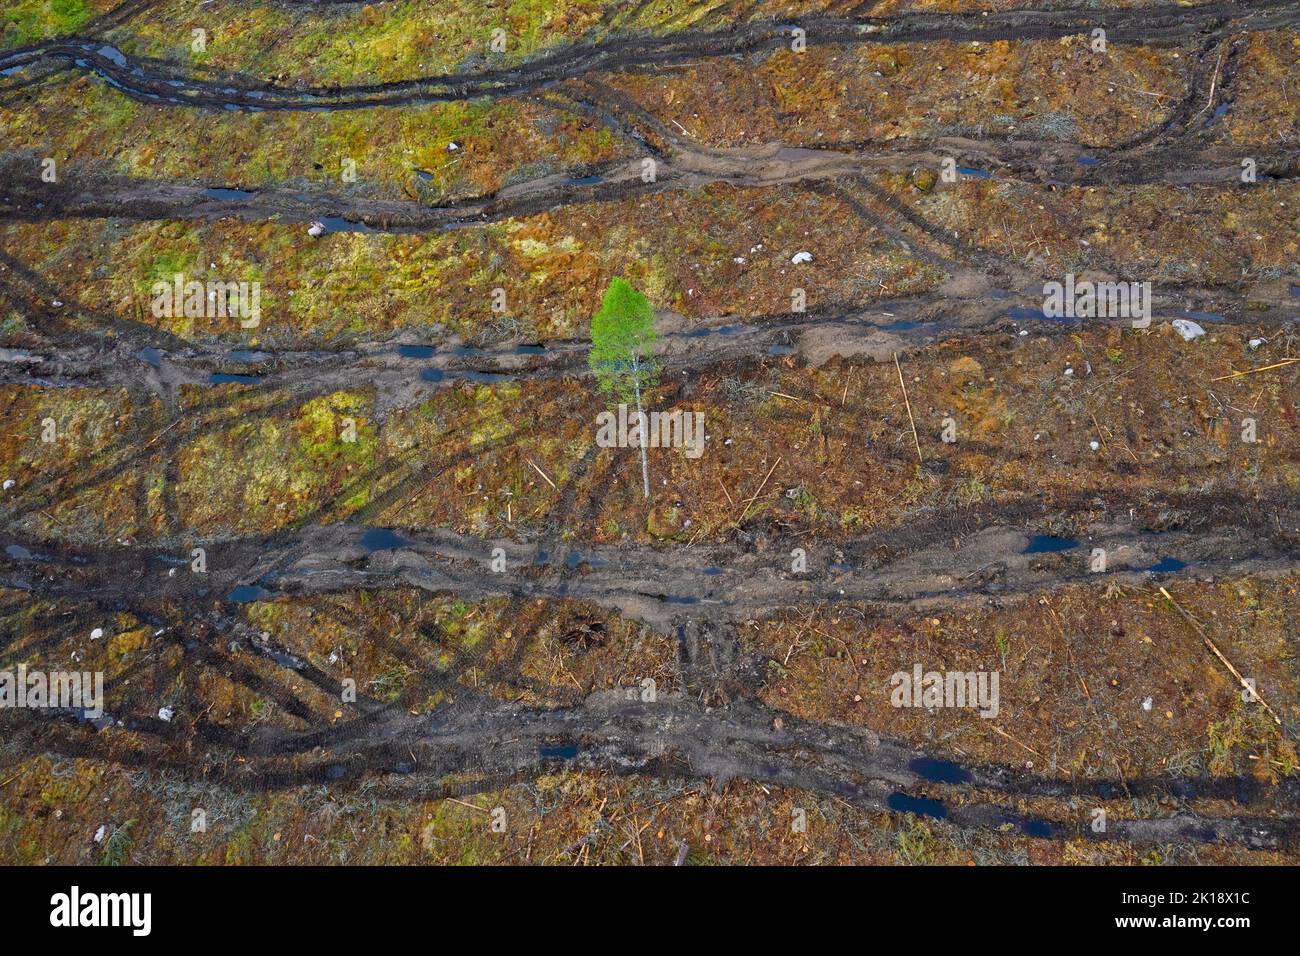 La vista aerea del taglio netto che mostra i cingoli caterpillar, il taglio netto / lo sgombramento è una pratica di silvicoltura / dissodamento in cui tutti gli alberi vengono tagliati Foto Stock